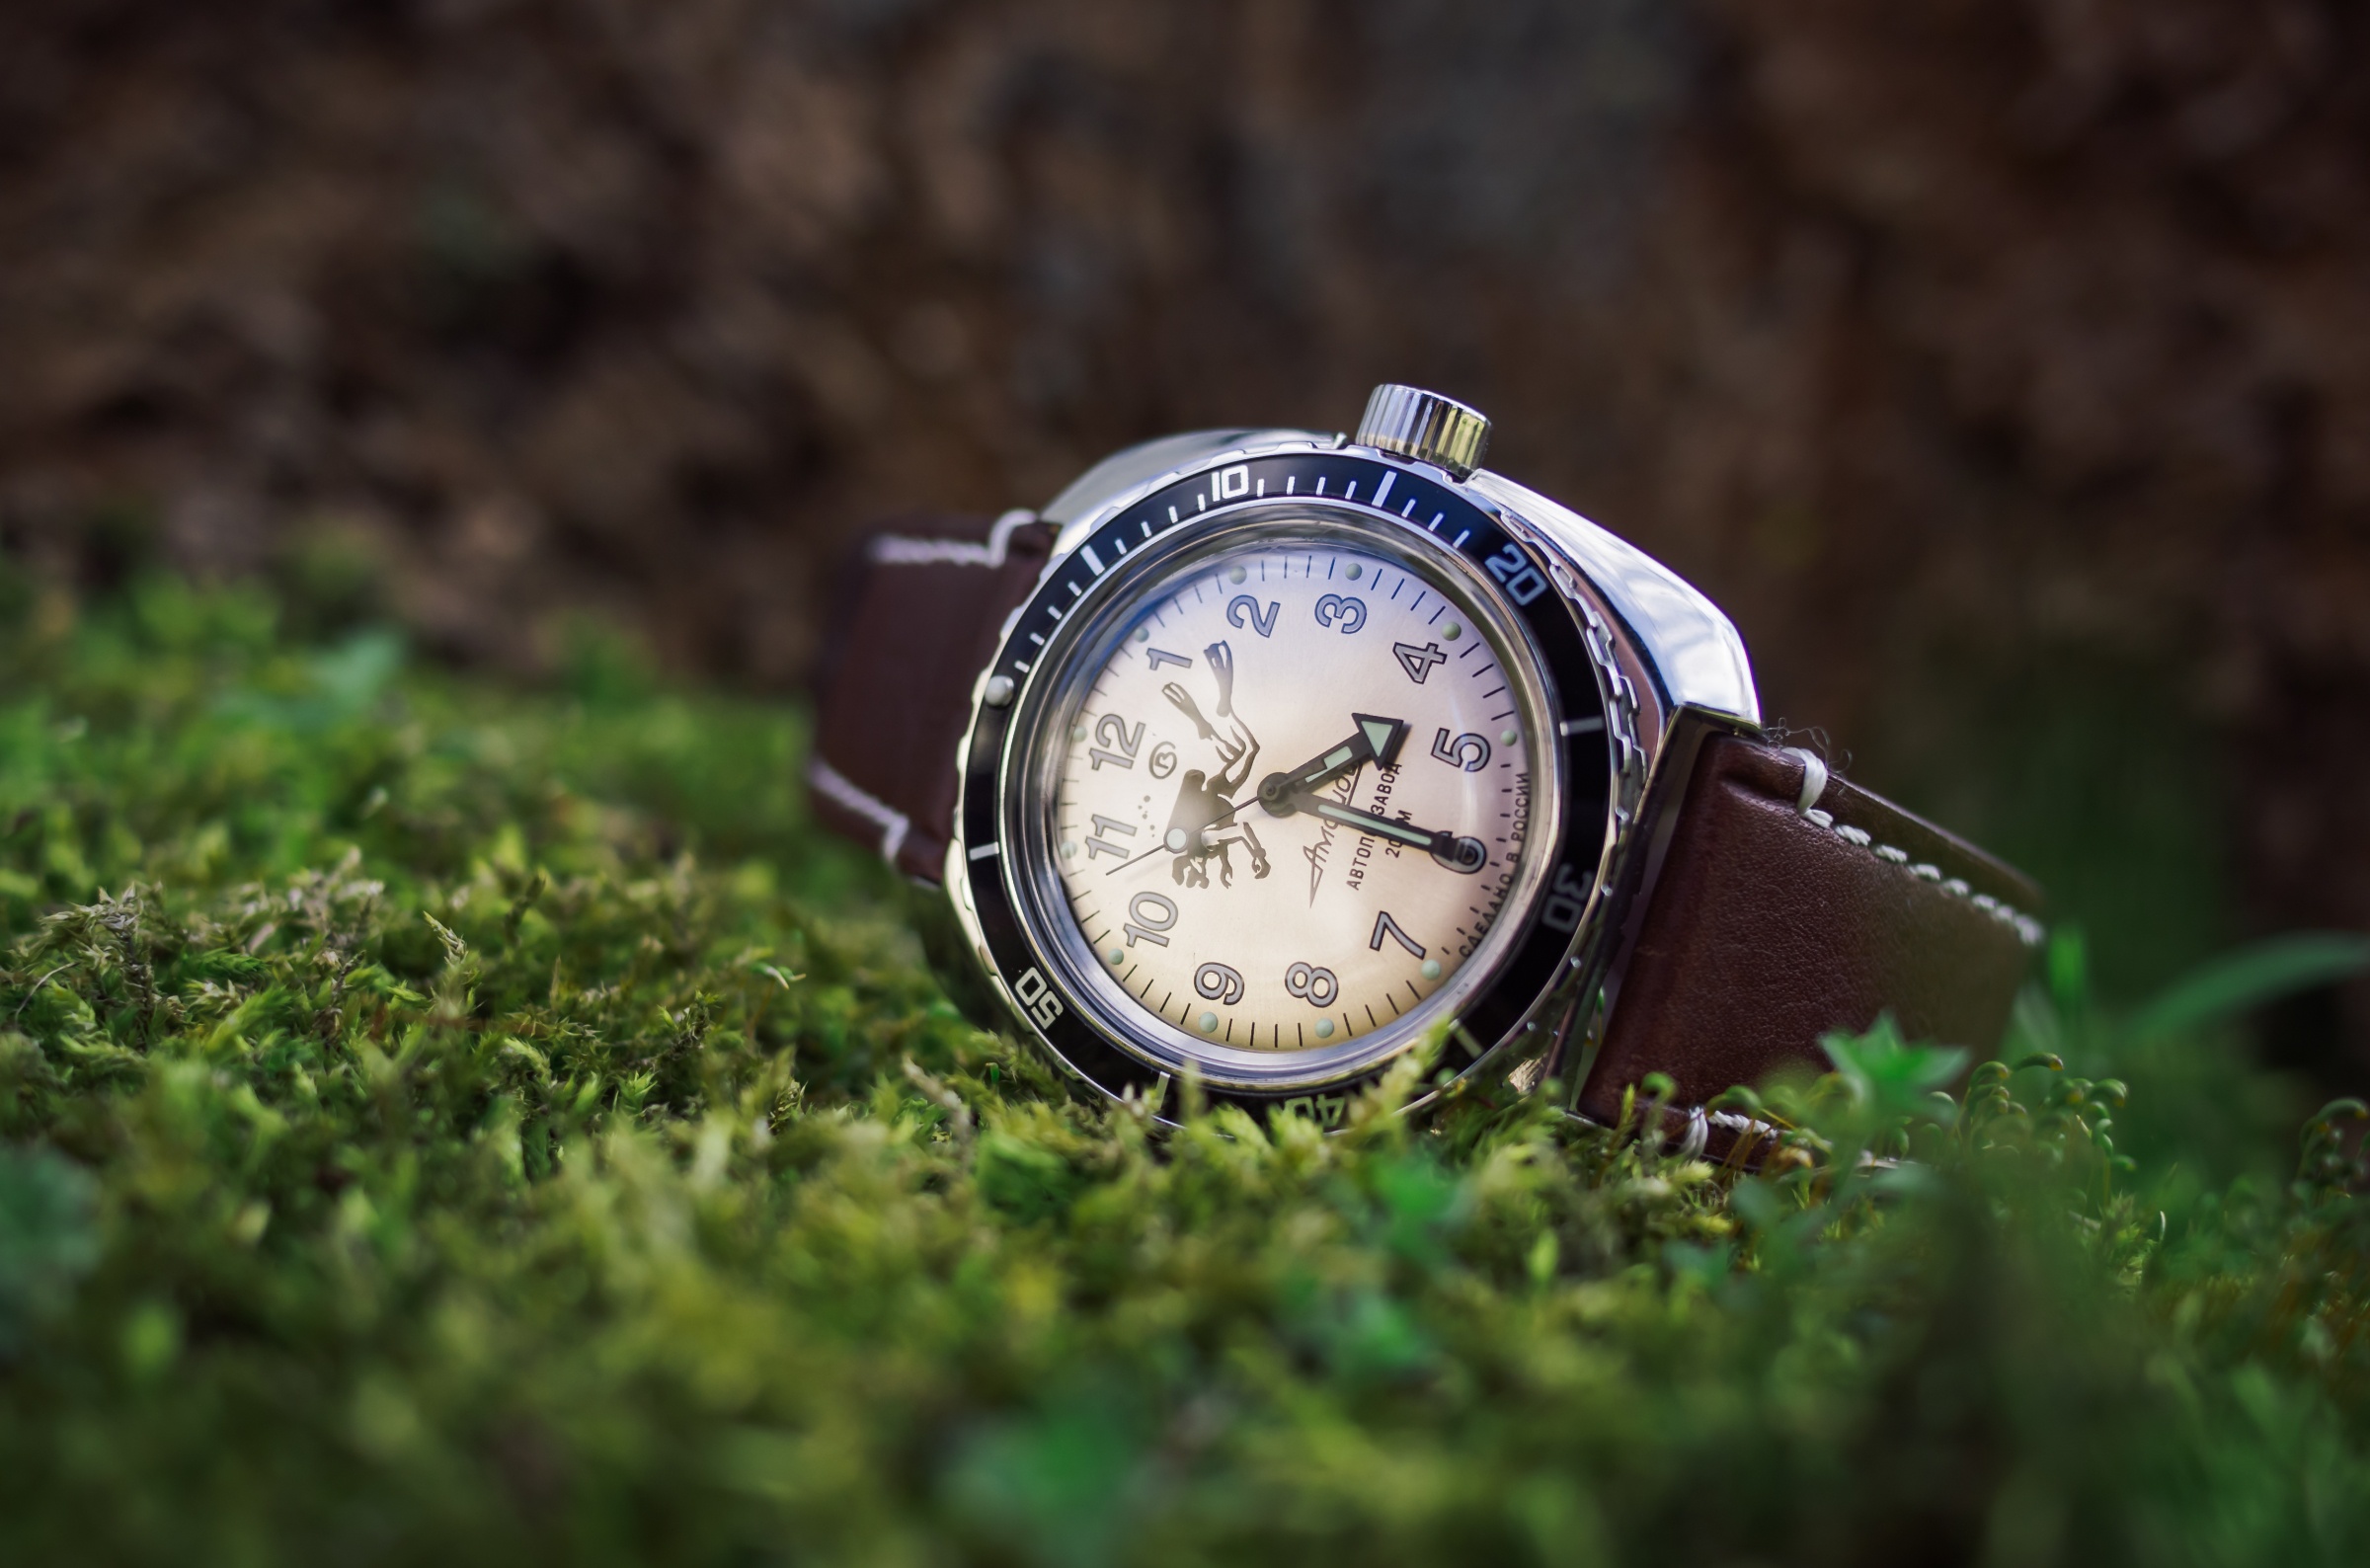 Видеть наручные часы. Наручные часы. Фотосъемка швейцарских часов. Часы наручные на столе. Часы в траве.